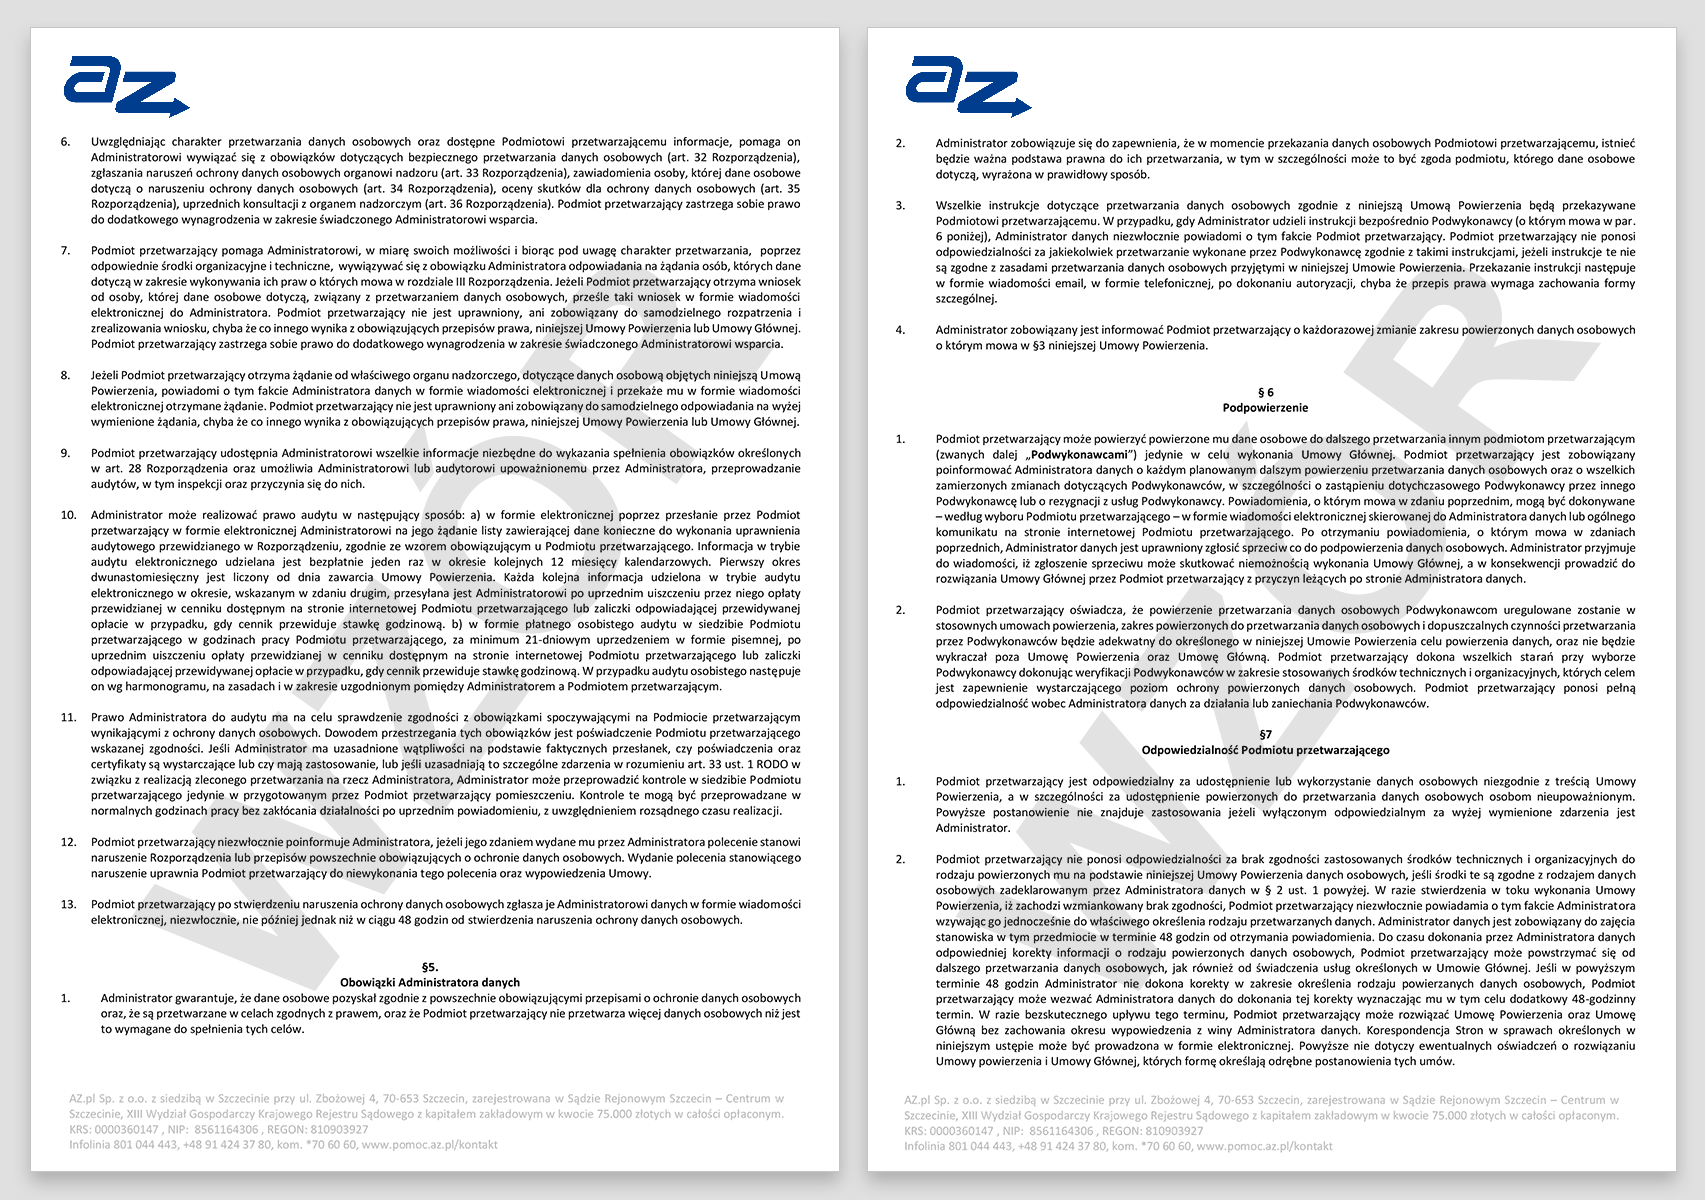 RODO - jak wygląda przykładowa umowa powierzenia przetwarzania danych w AZ.pl